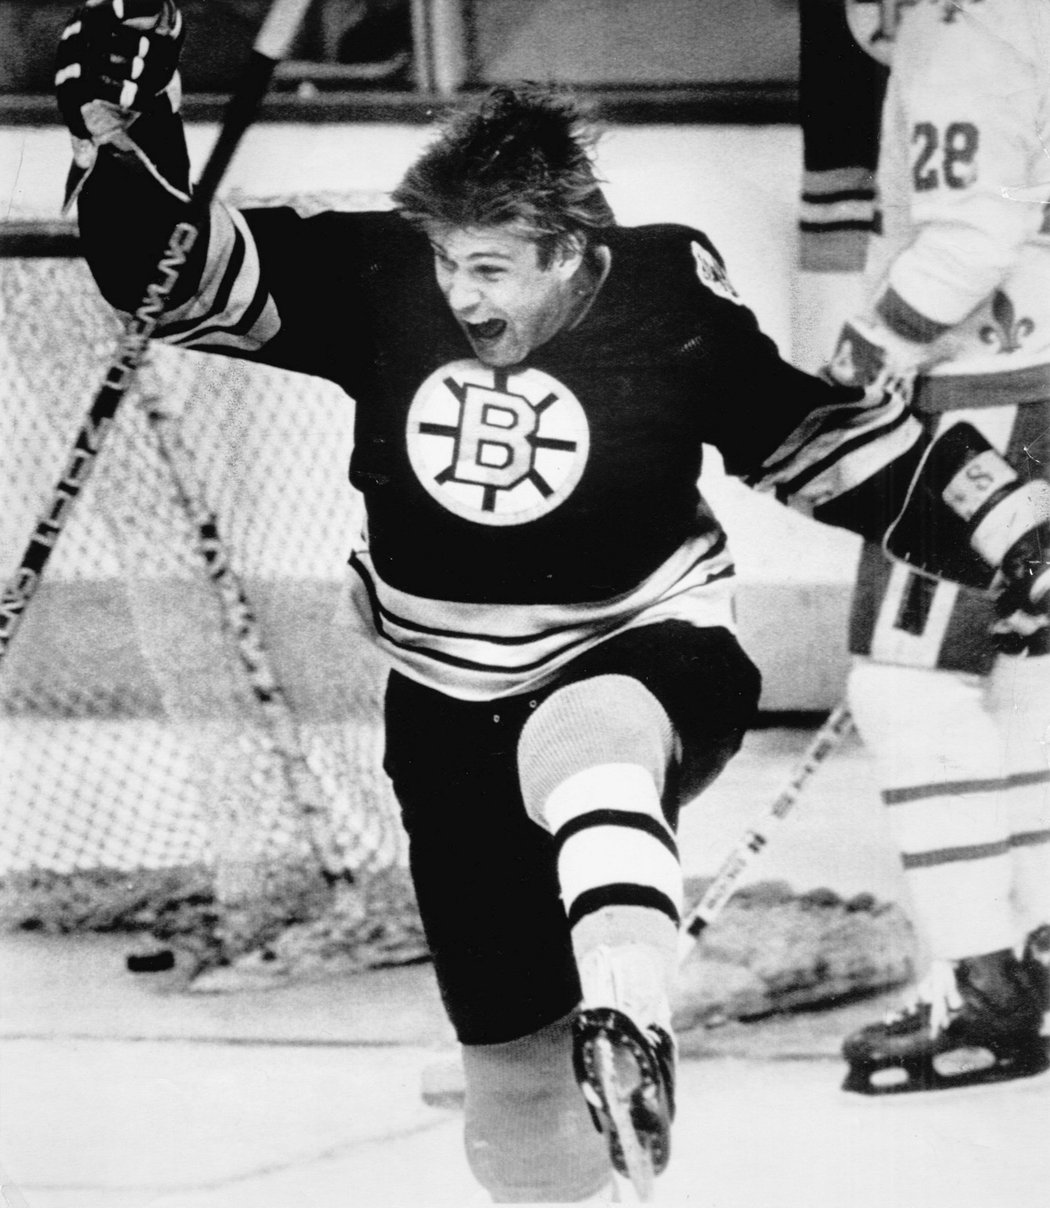 Rakovina si nevybírá. Někdejší hvězdný útočník NHL Peter McNab podlehl zákeřné nemoci v 70 letech